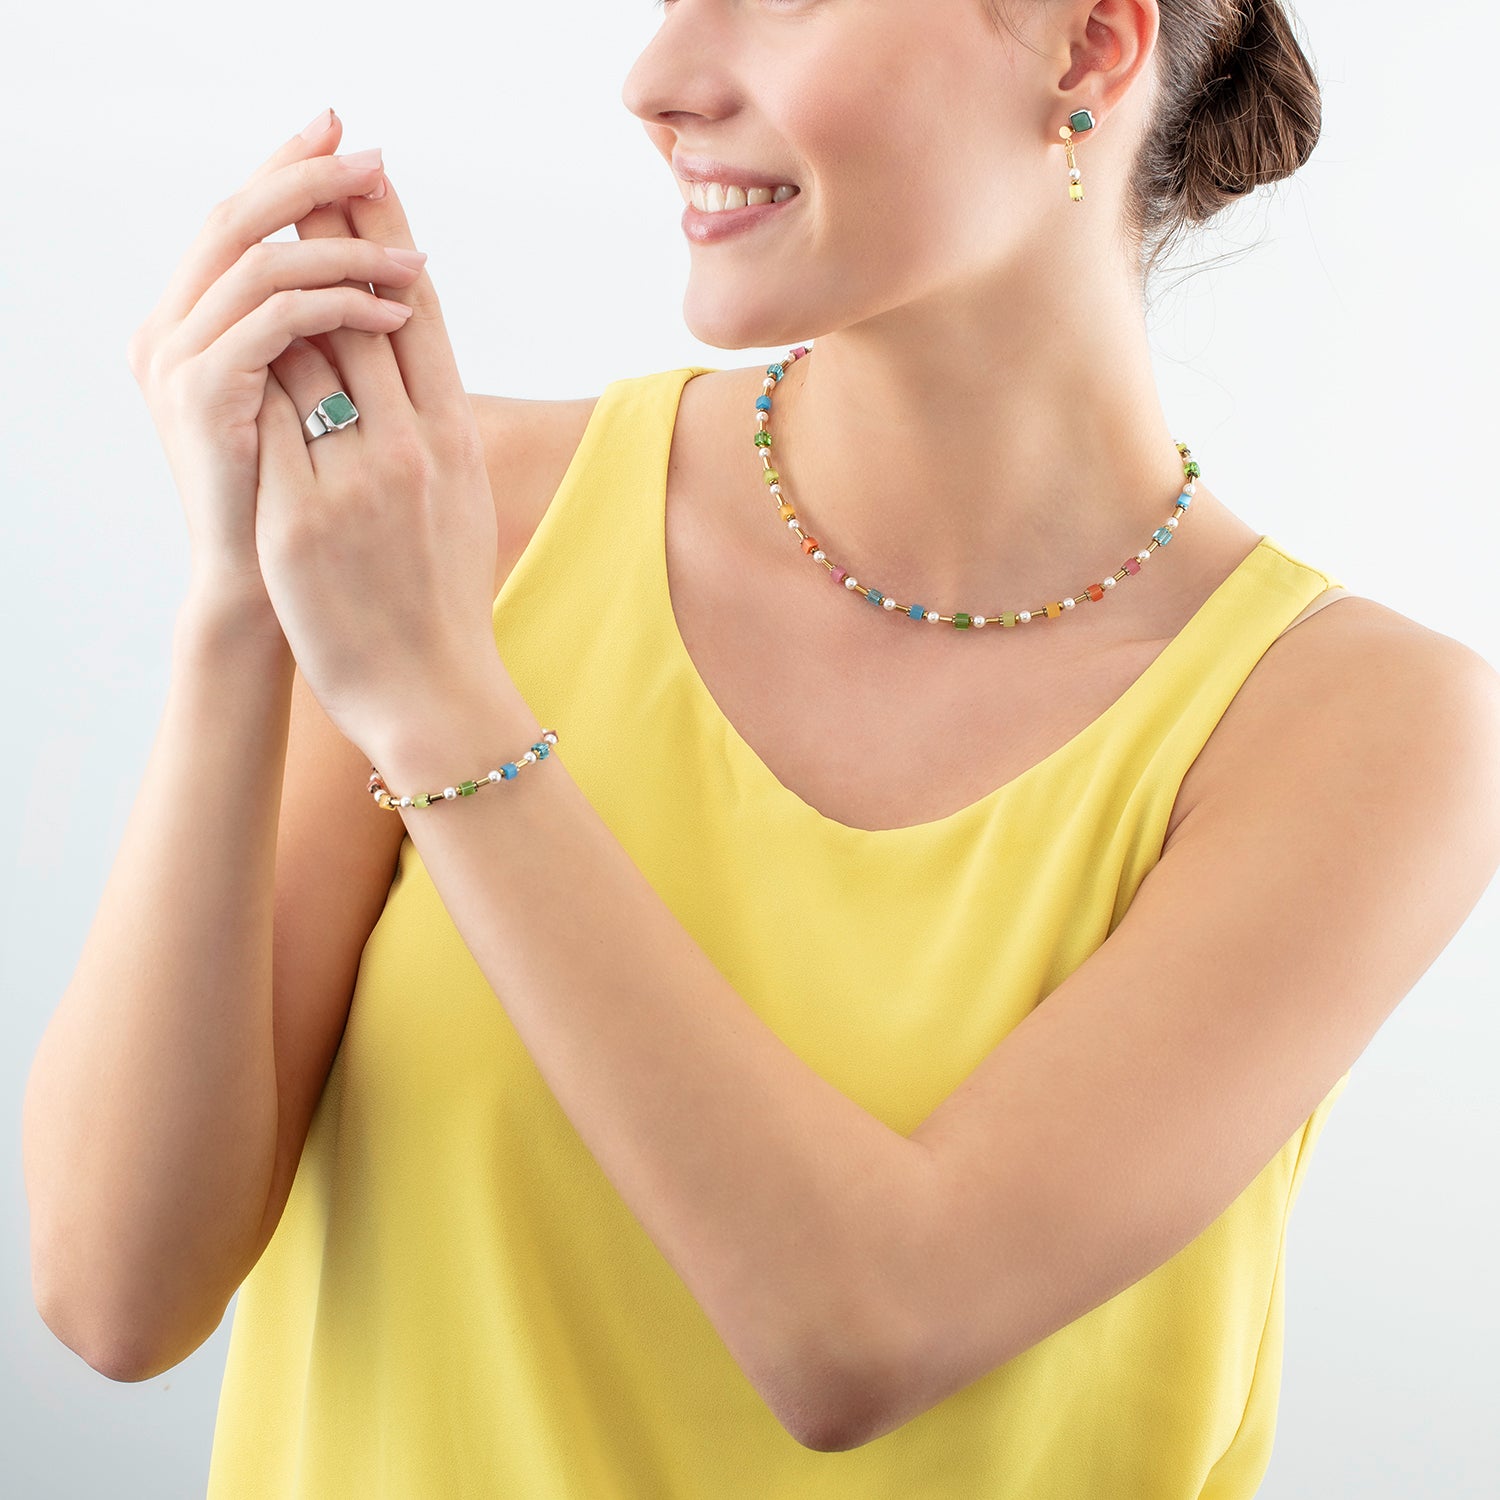 Bracelet Mini Cubes & Pearls Mix gold-rainbow